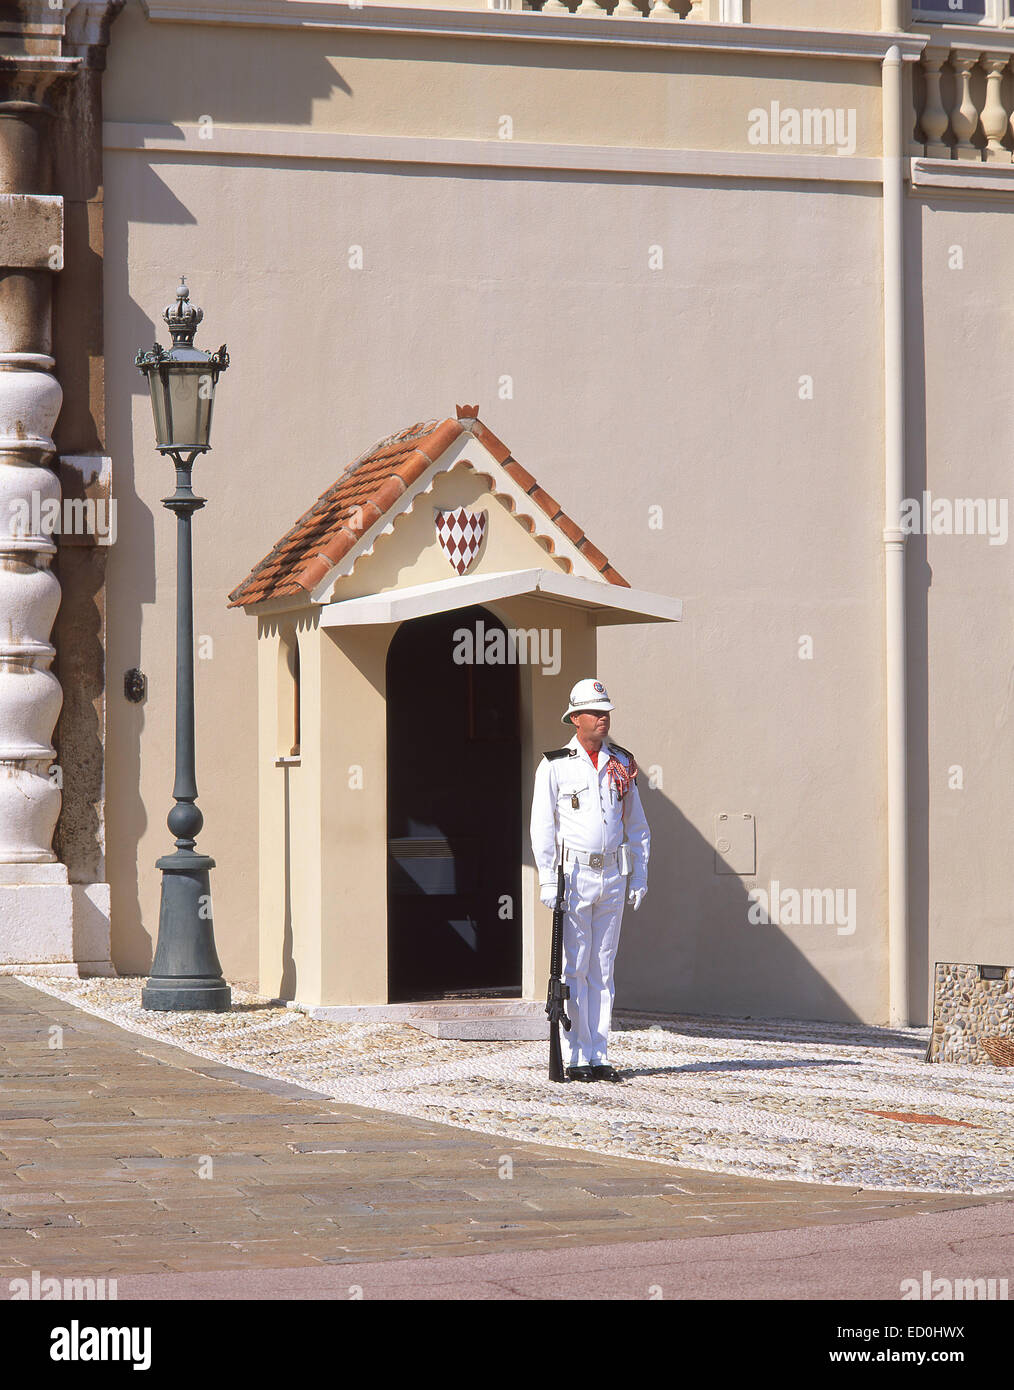 Royal guard, Palais Princier de Monaco, Place du Palais, Monaco-Ville, Principality of Monaco Stock Photo